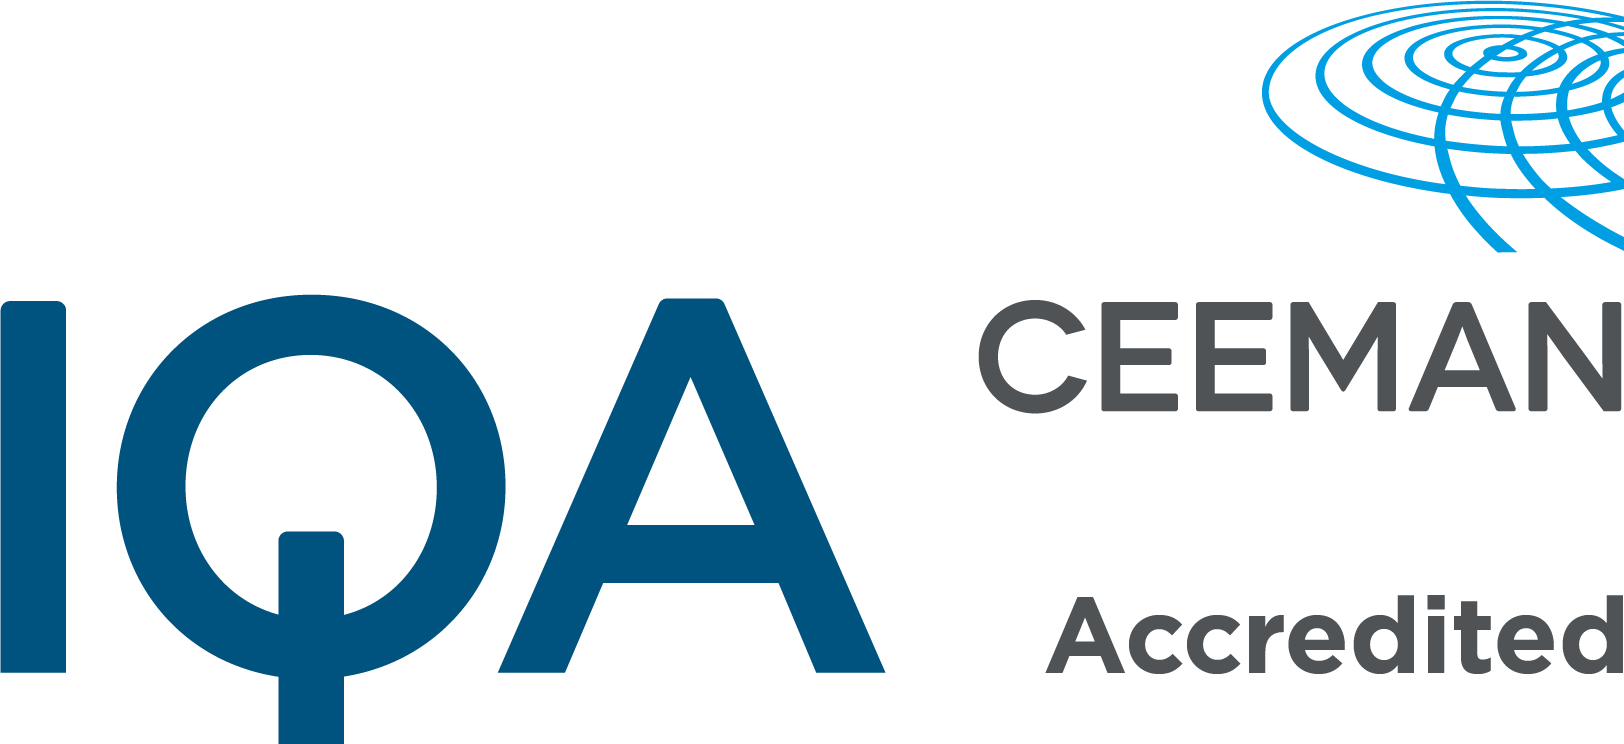 IQA CEEMAN accredited